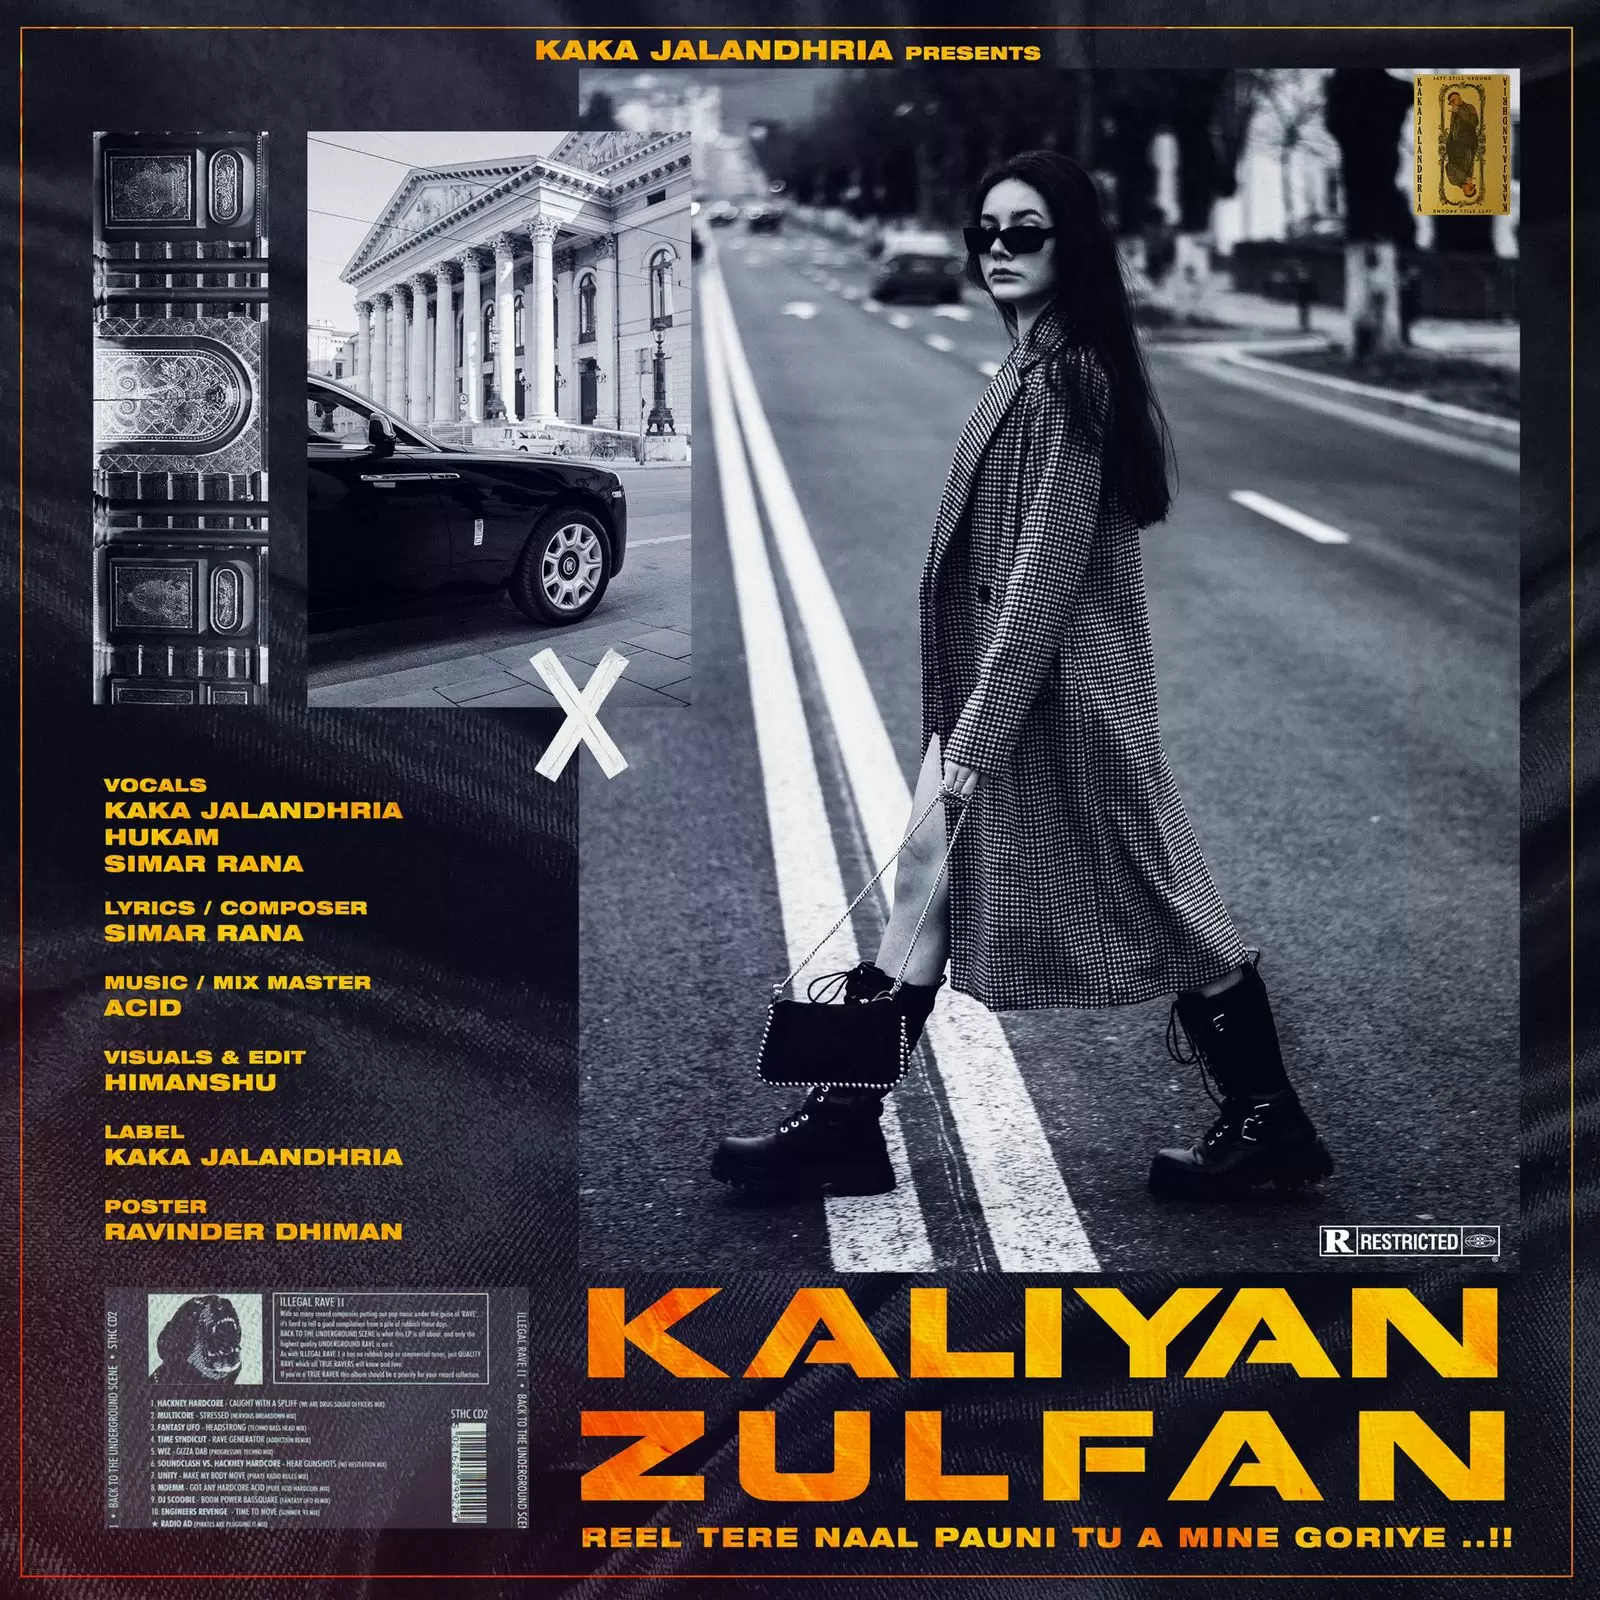 Kaliyan Zulfan